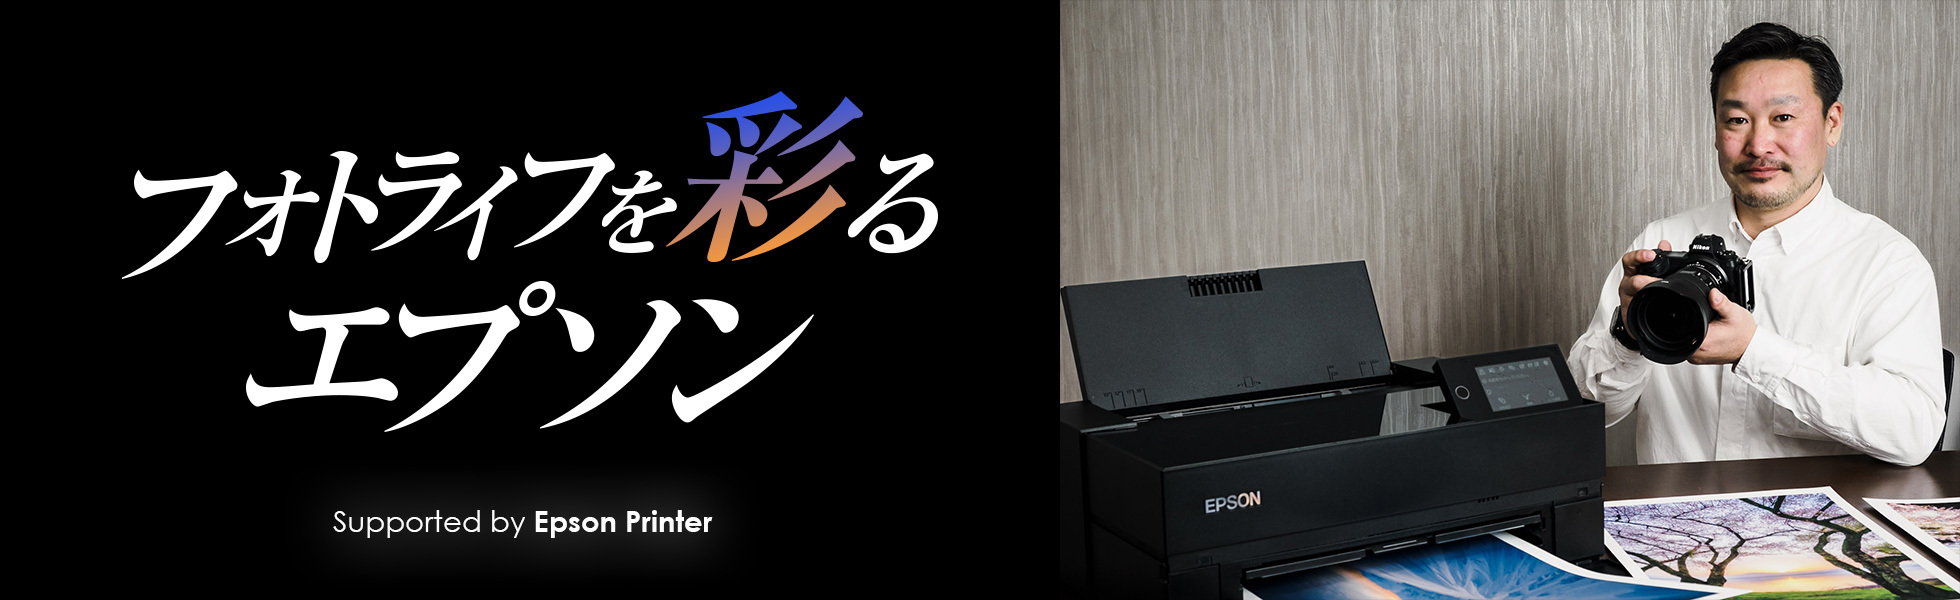 フォトライフを彩るエプソン　Supported by Epson Printer - デジカメ Watch